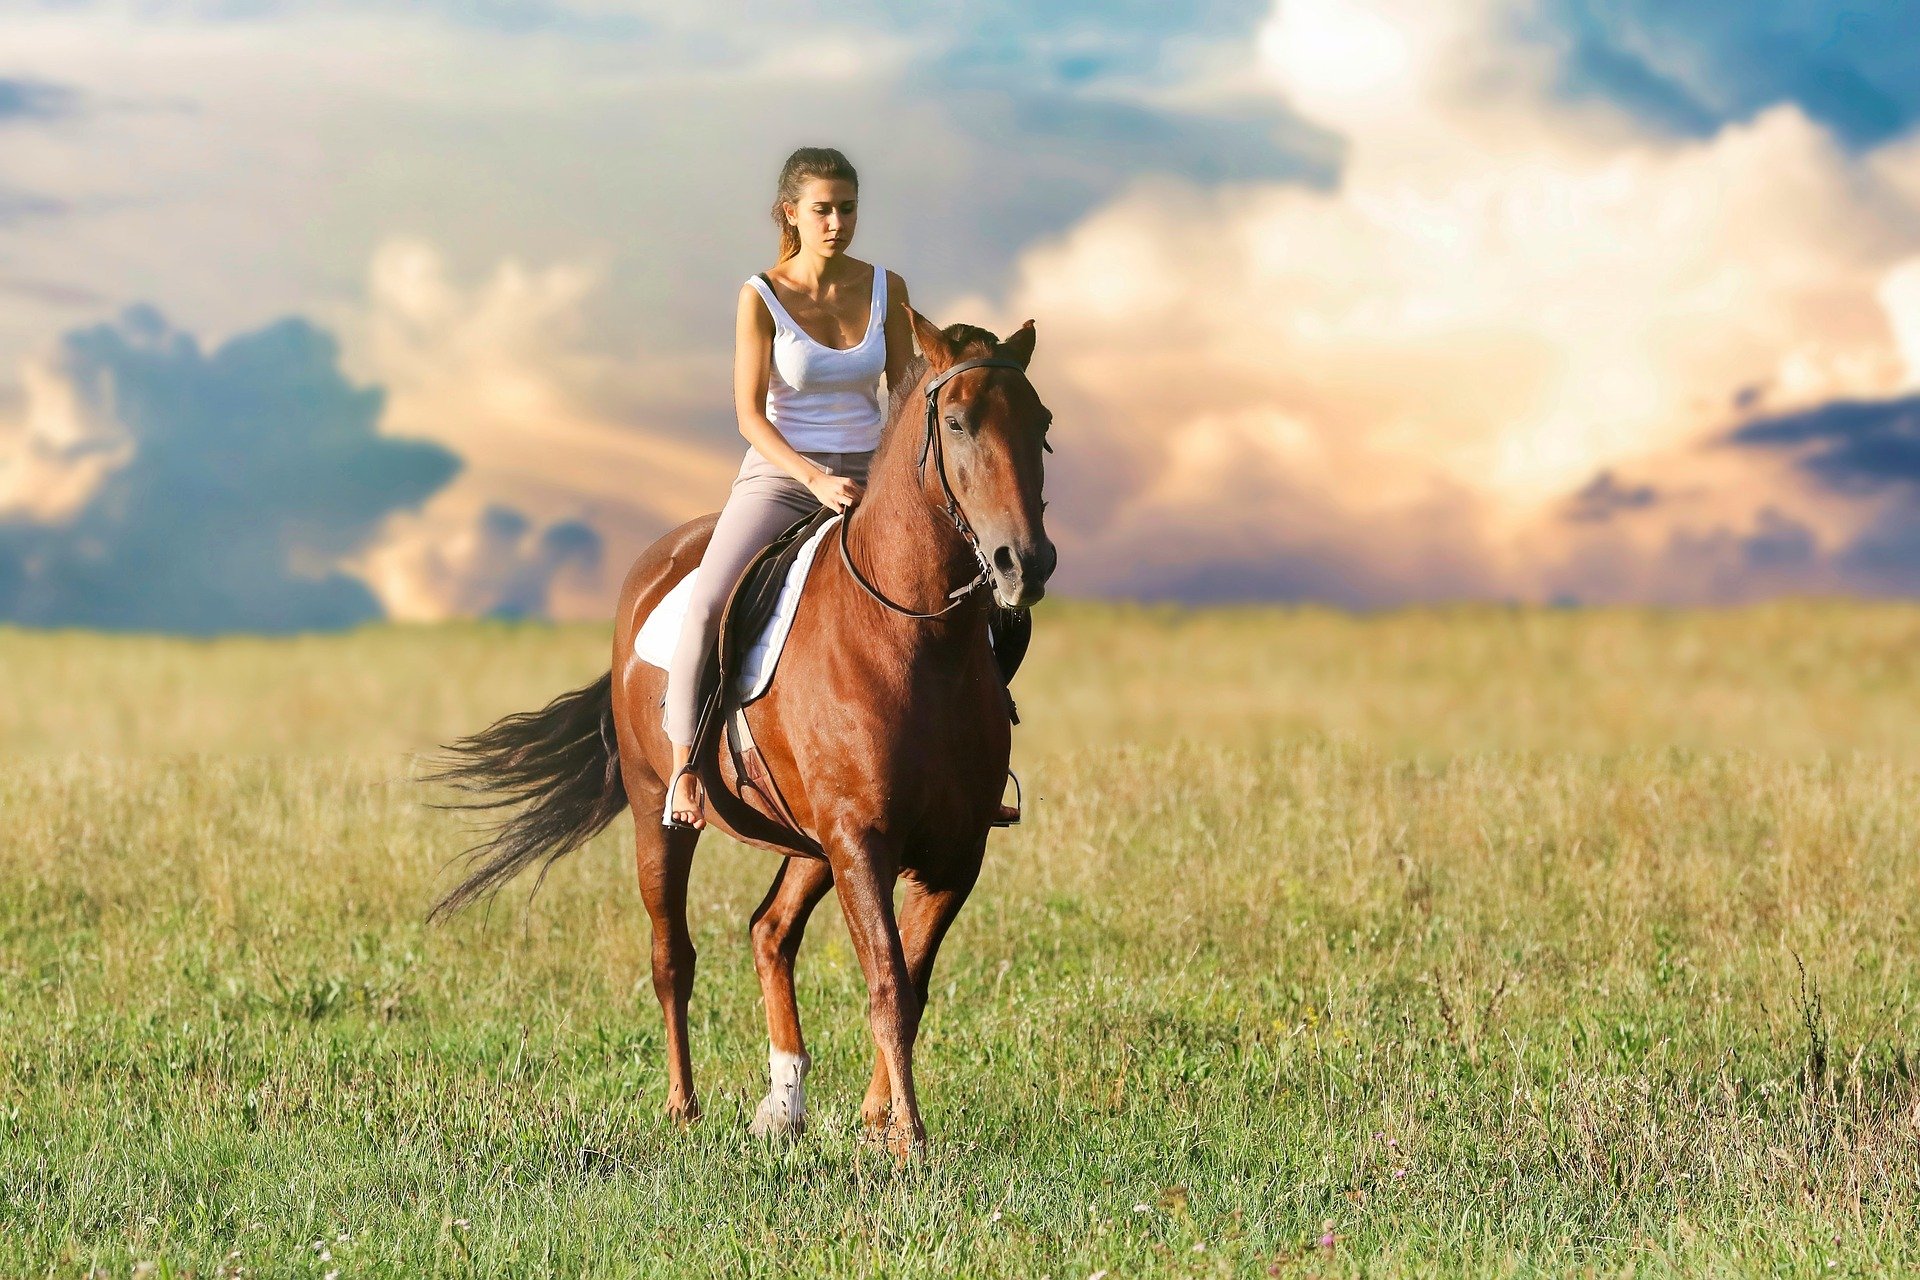 Im Bild - Eine Frau reitet auf einem Pferd im Feld | Quelle: Pixabay 